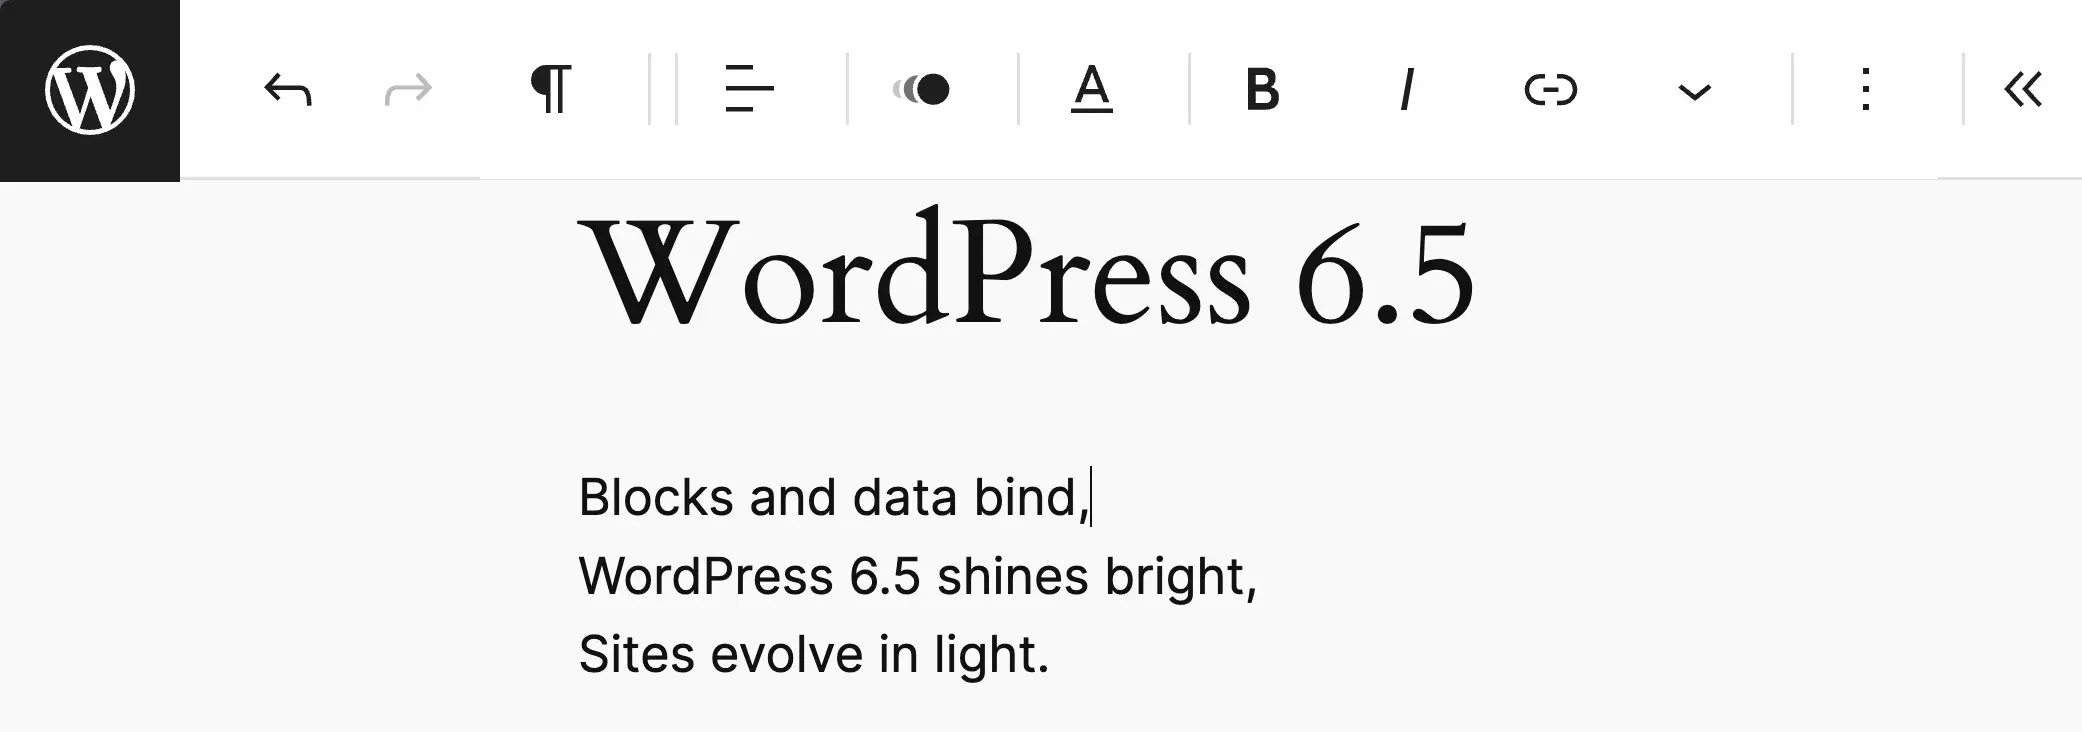 Der ablenkungsfreie Modus von WordPress 6.5 ist aktiviert und zeigt die obere Symbolleiste.